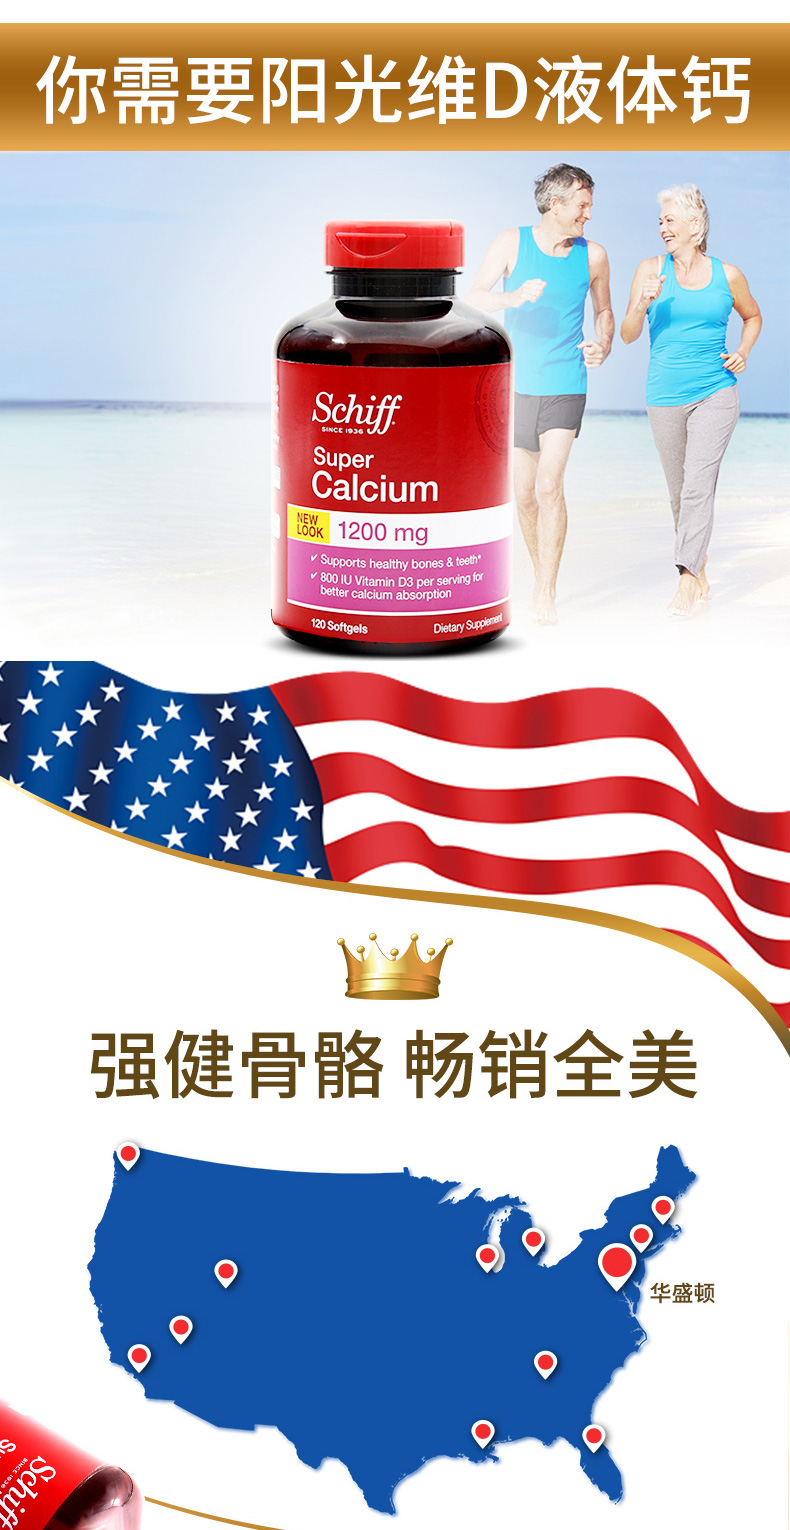 美国进口 Schiff舒钙软胶囊1200mg 维生素D3 钙片 120粒 产品信息 第7张